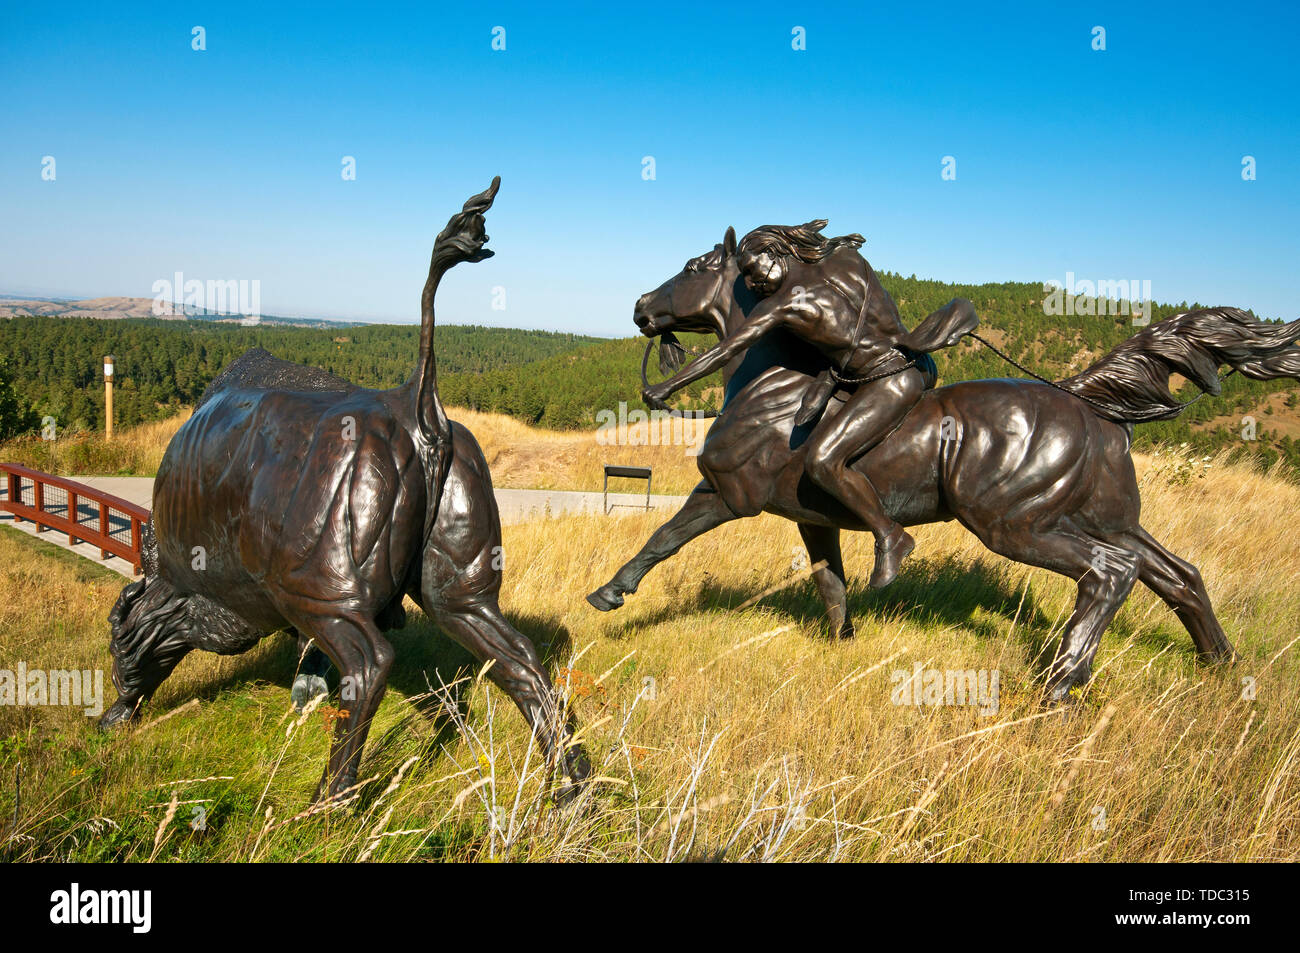 Esculturas de bronce sobre la caza de búfalos en 'Tatanka-Story del bisonte' Museum (fundada por Kevin Costner),Deadwood, Condado de Lawrence, Dakota del Sur, EE.UU. Foto de stock